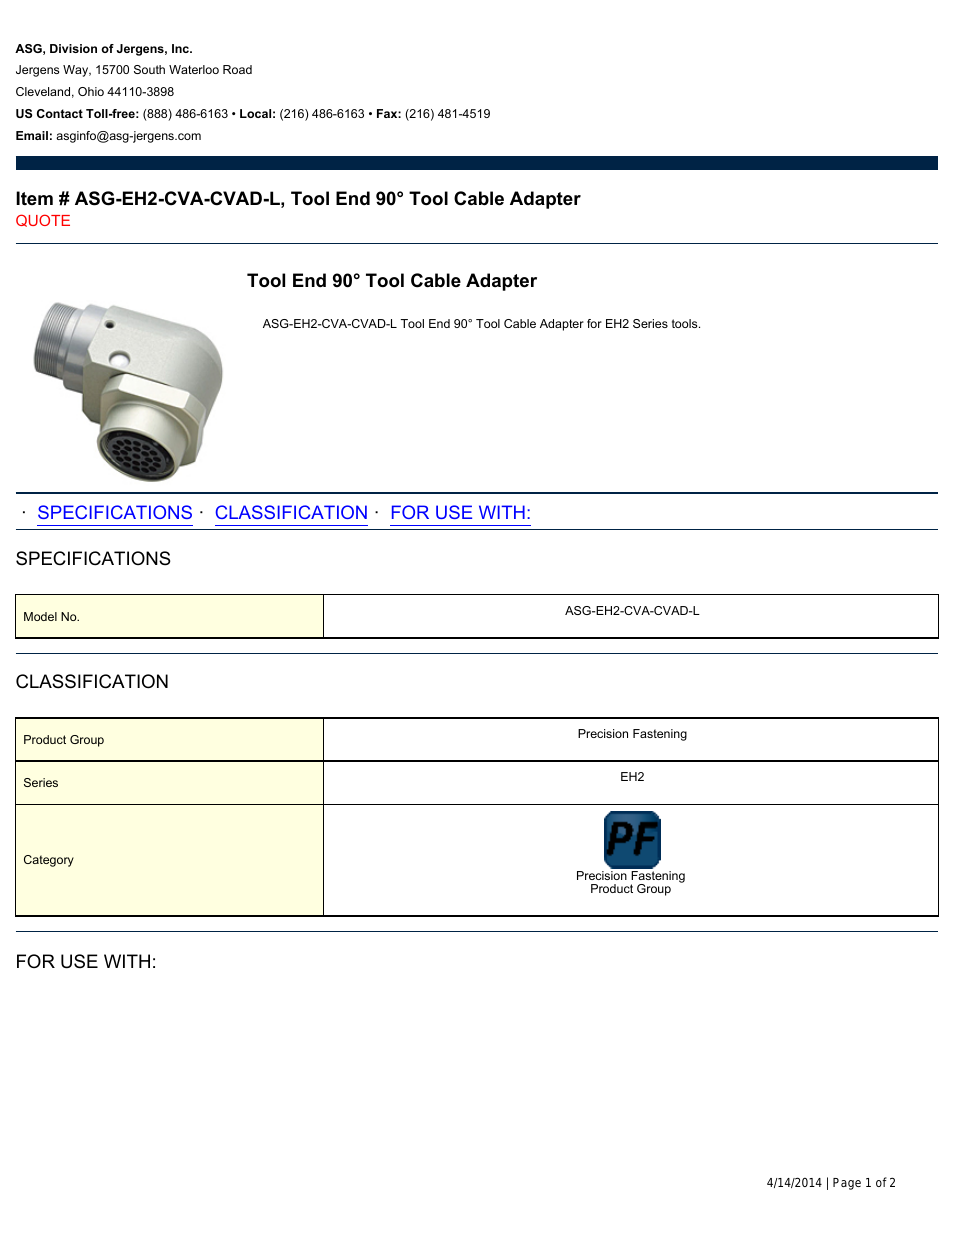 ASG-EH2-CVA-CVAD-L Tool Cable Adapter